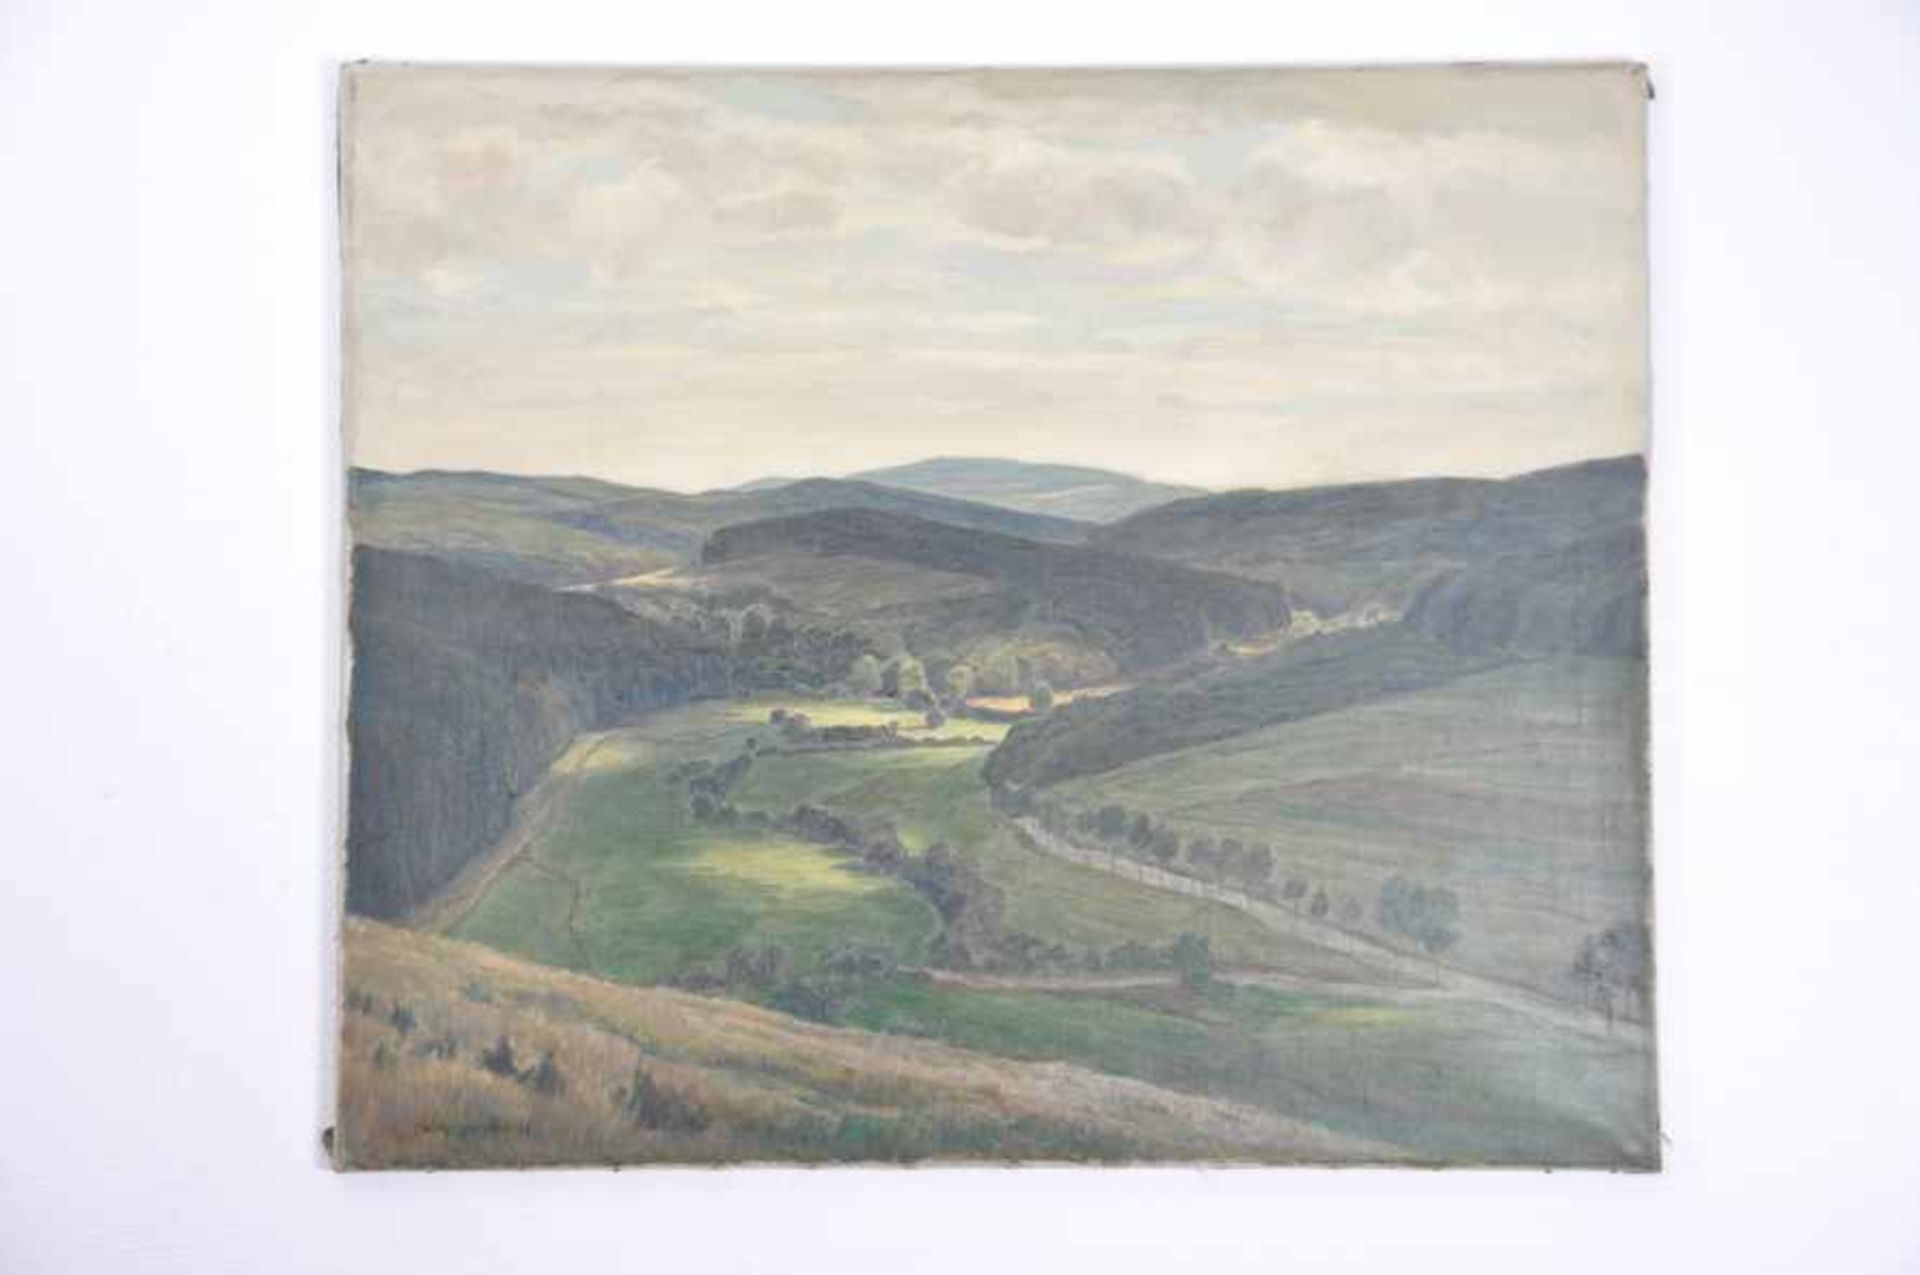 Landschaft mit Wolkenschatten (Sauerland).Willy ter Hell (02.12.1883 Norden - 01.07.1947